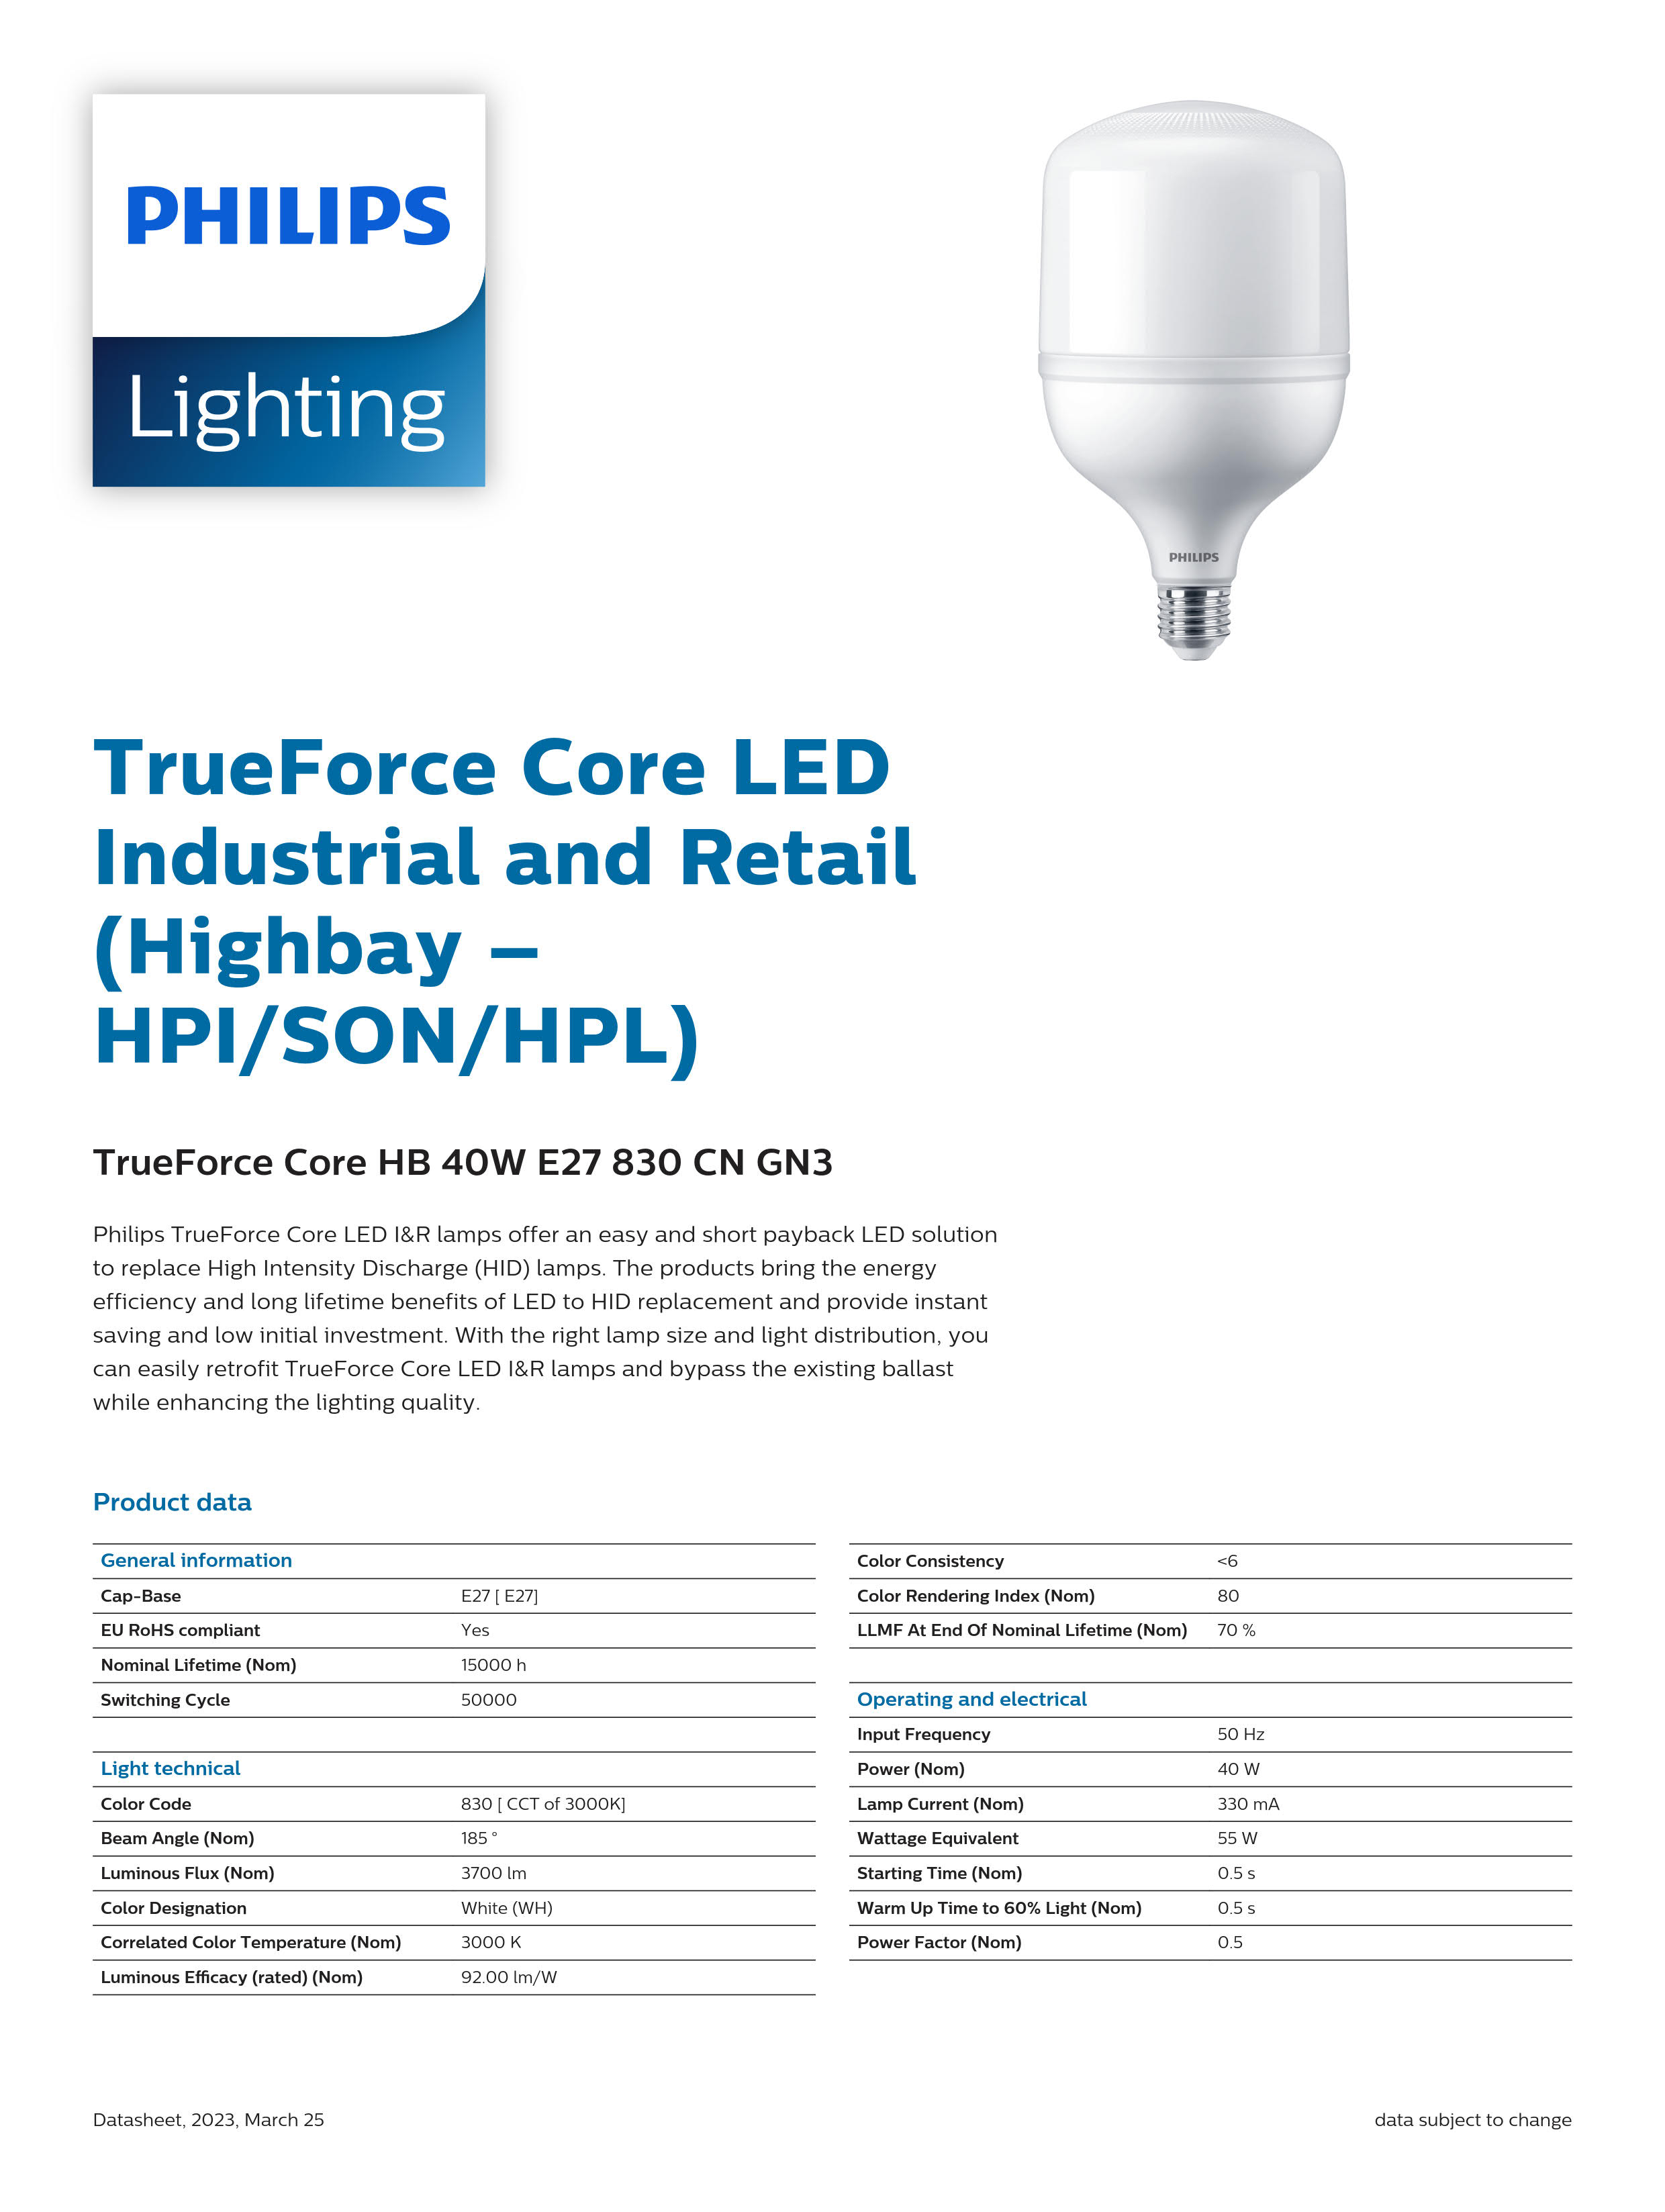 PHILIPS LED Bulb TrueForce Core HB 40W E27 830 CN GN3 929002408510